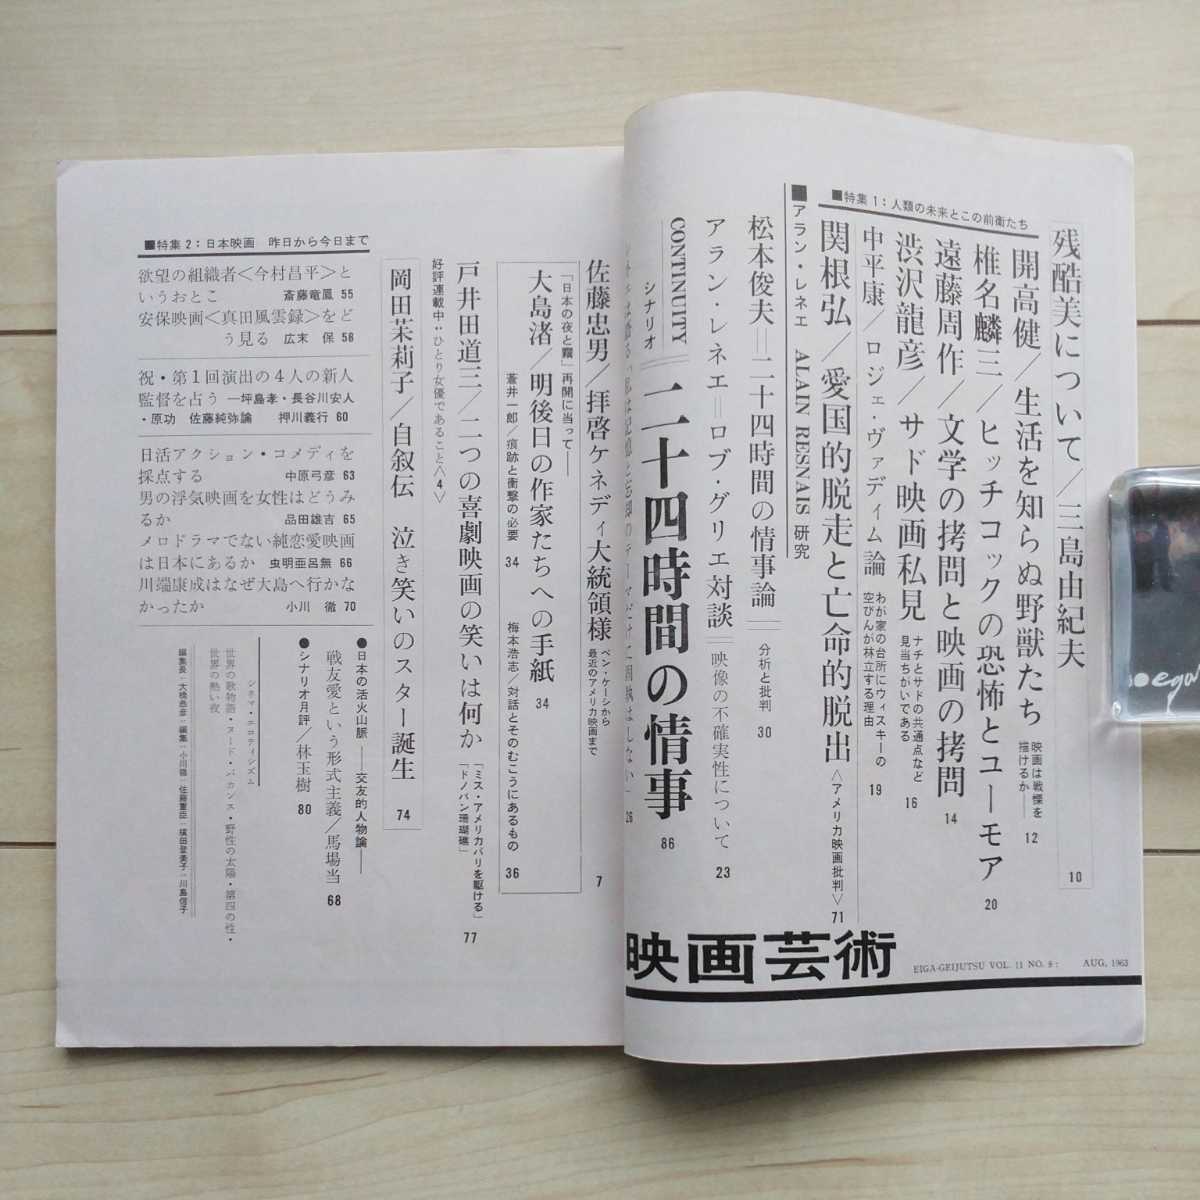 # журнал [ искусство кино ] Showa 38 год 8 месяц номер. сценарий [ 2 10 4 час. ..] место .. Mishima Yukio [ осталось . прекрасный ....] прочее.